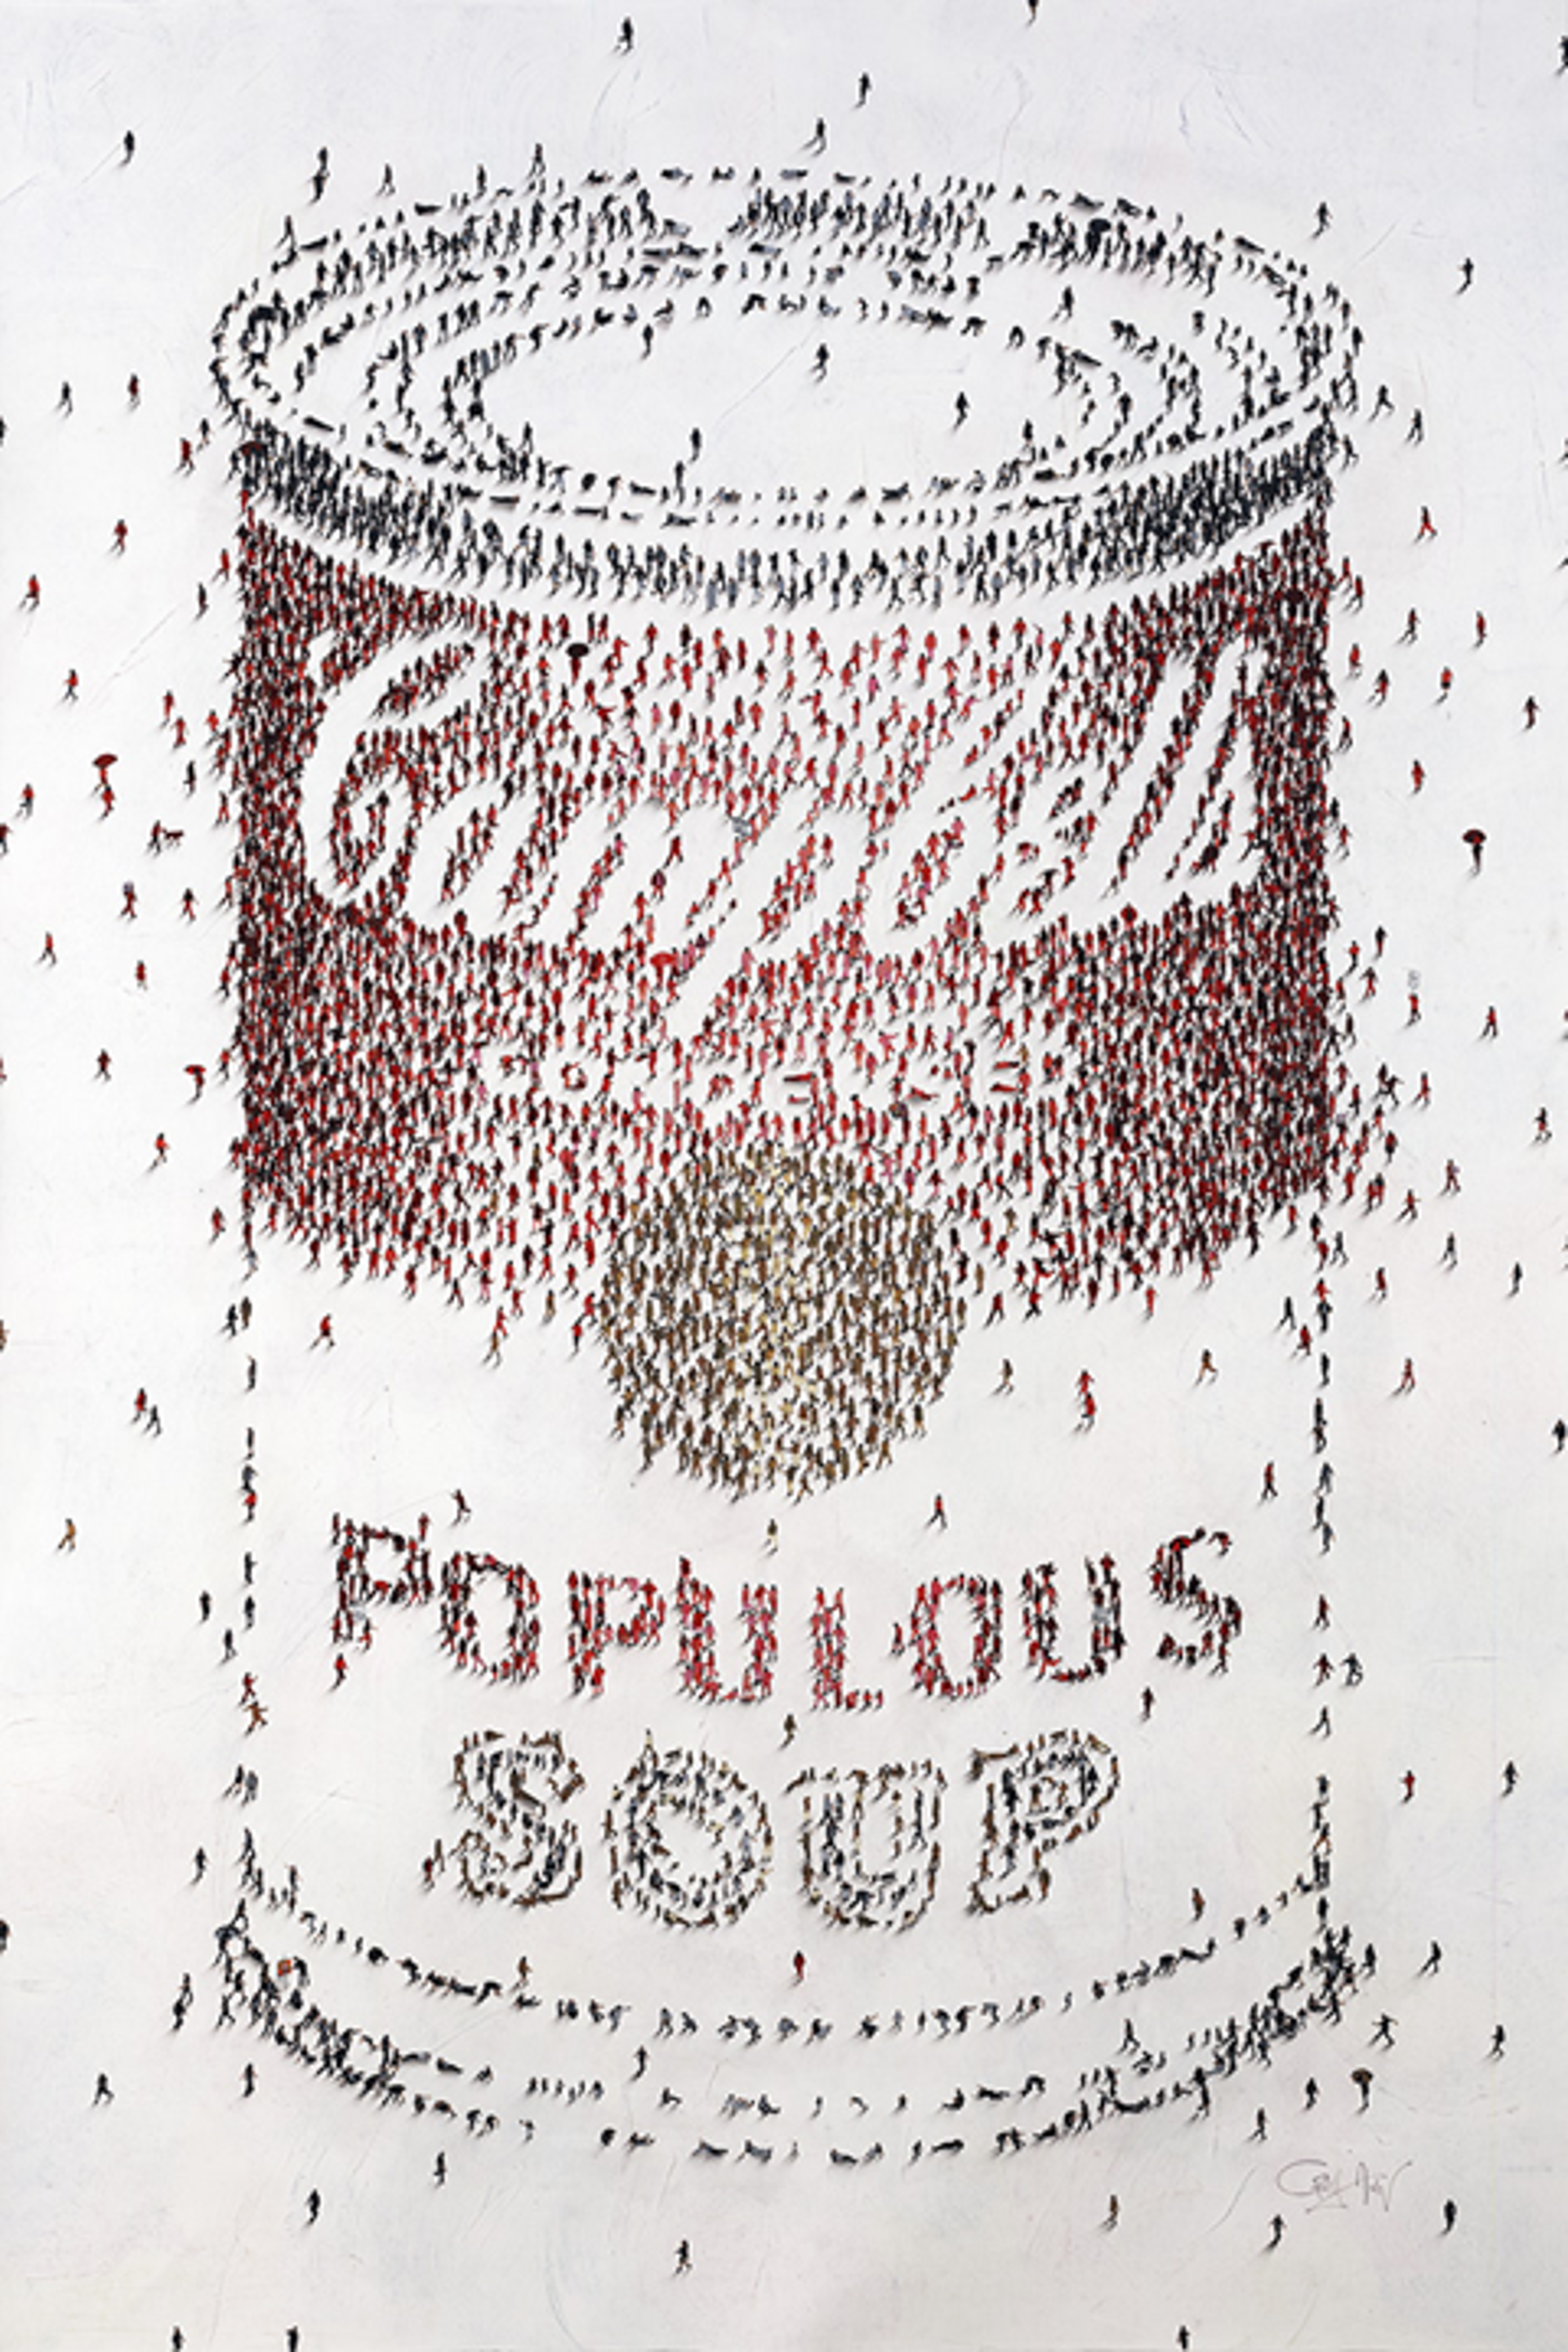 Populous Soup (Red & Black) by Craig Alan, Populus Commission